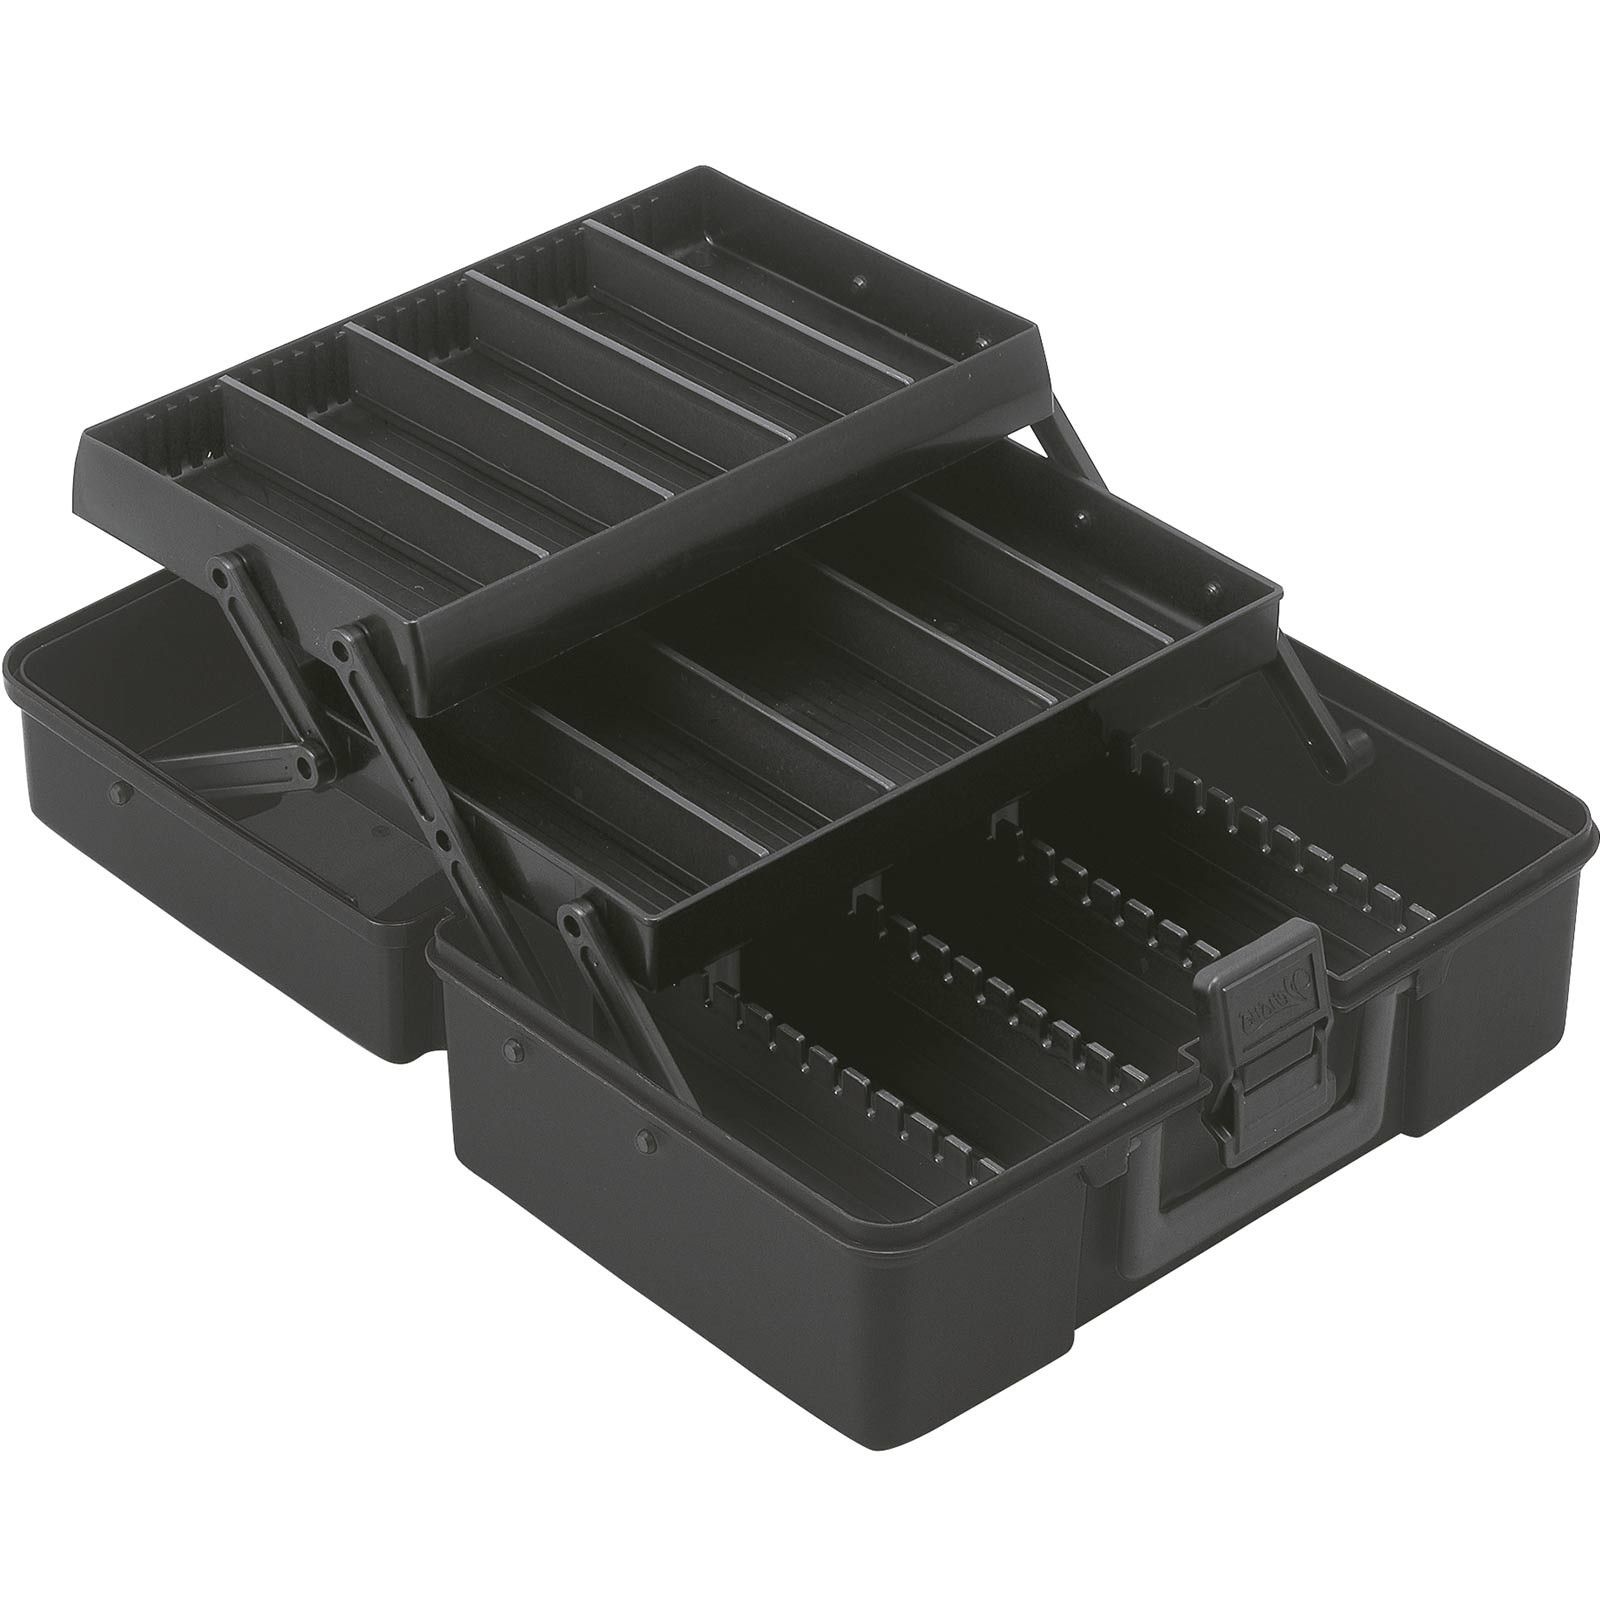 Meiho Box VS-7010 schwarz 28,4x18x11,2cm